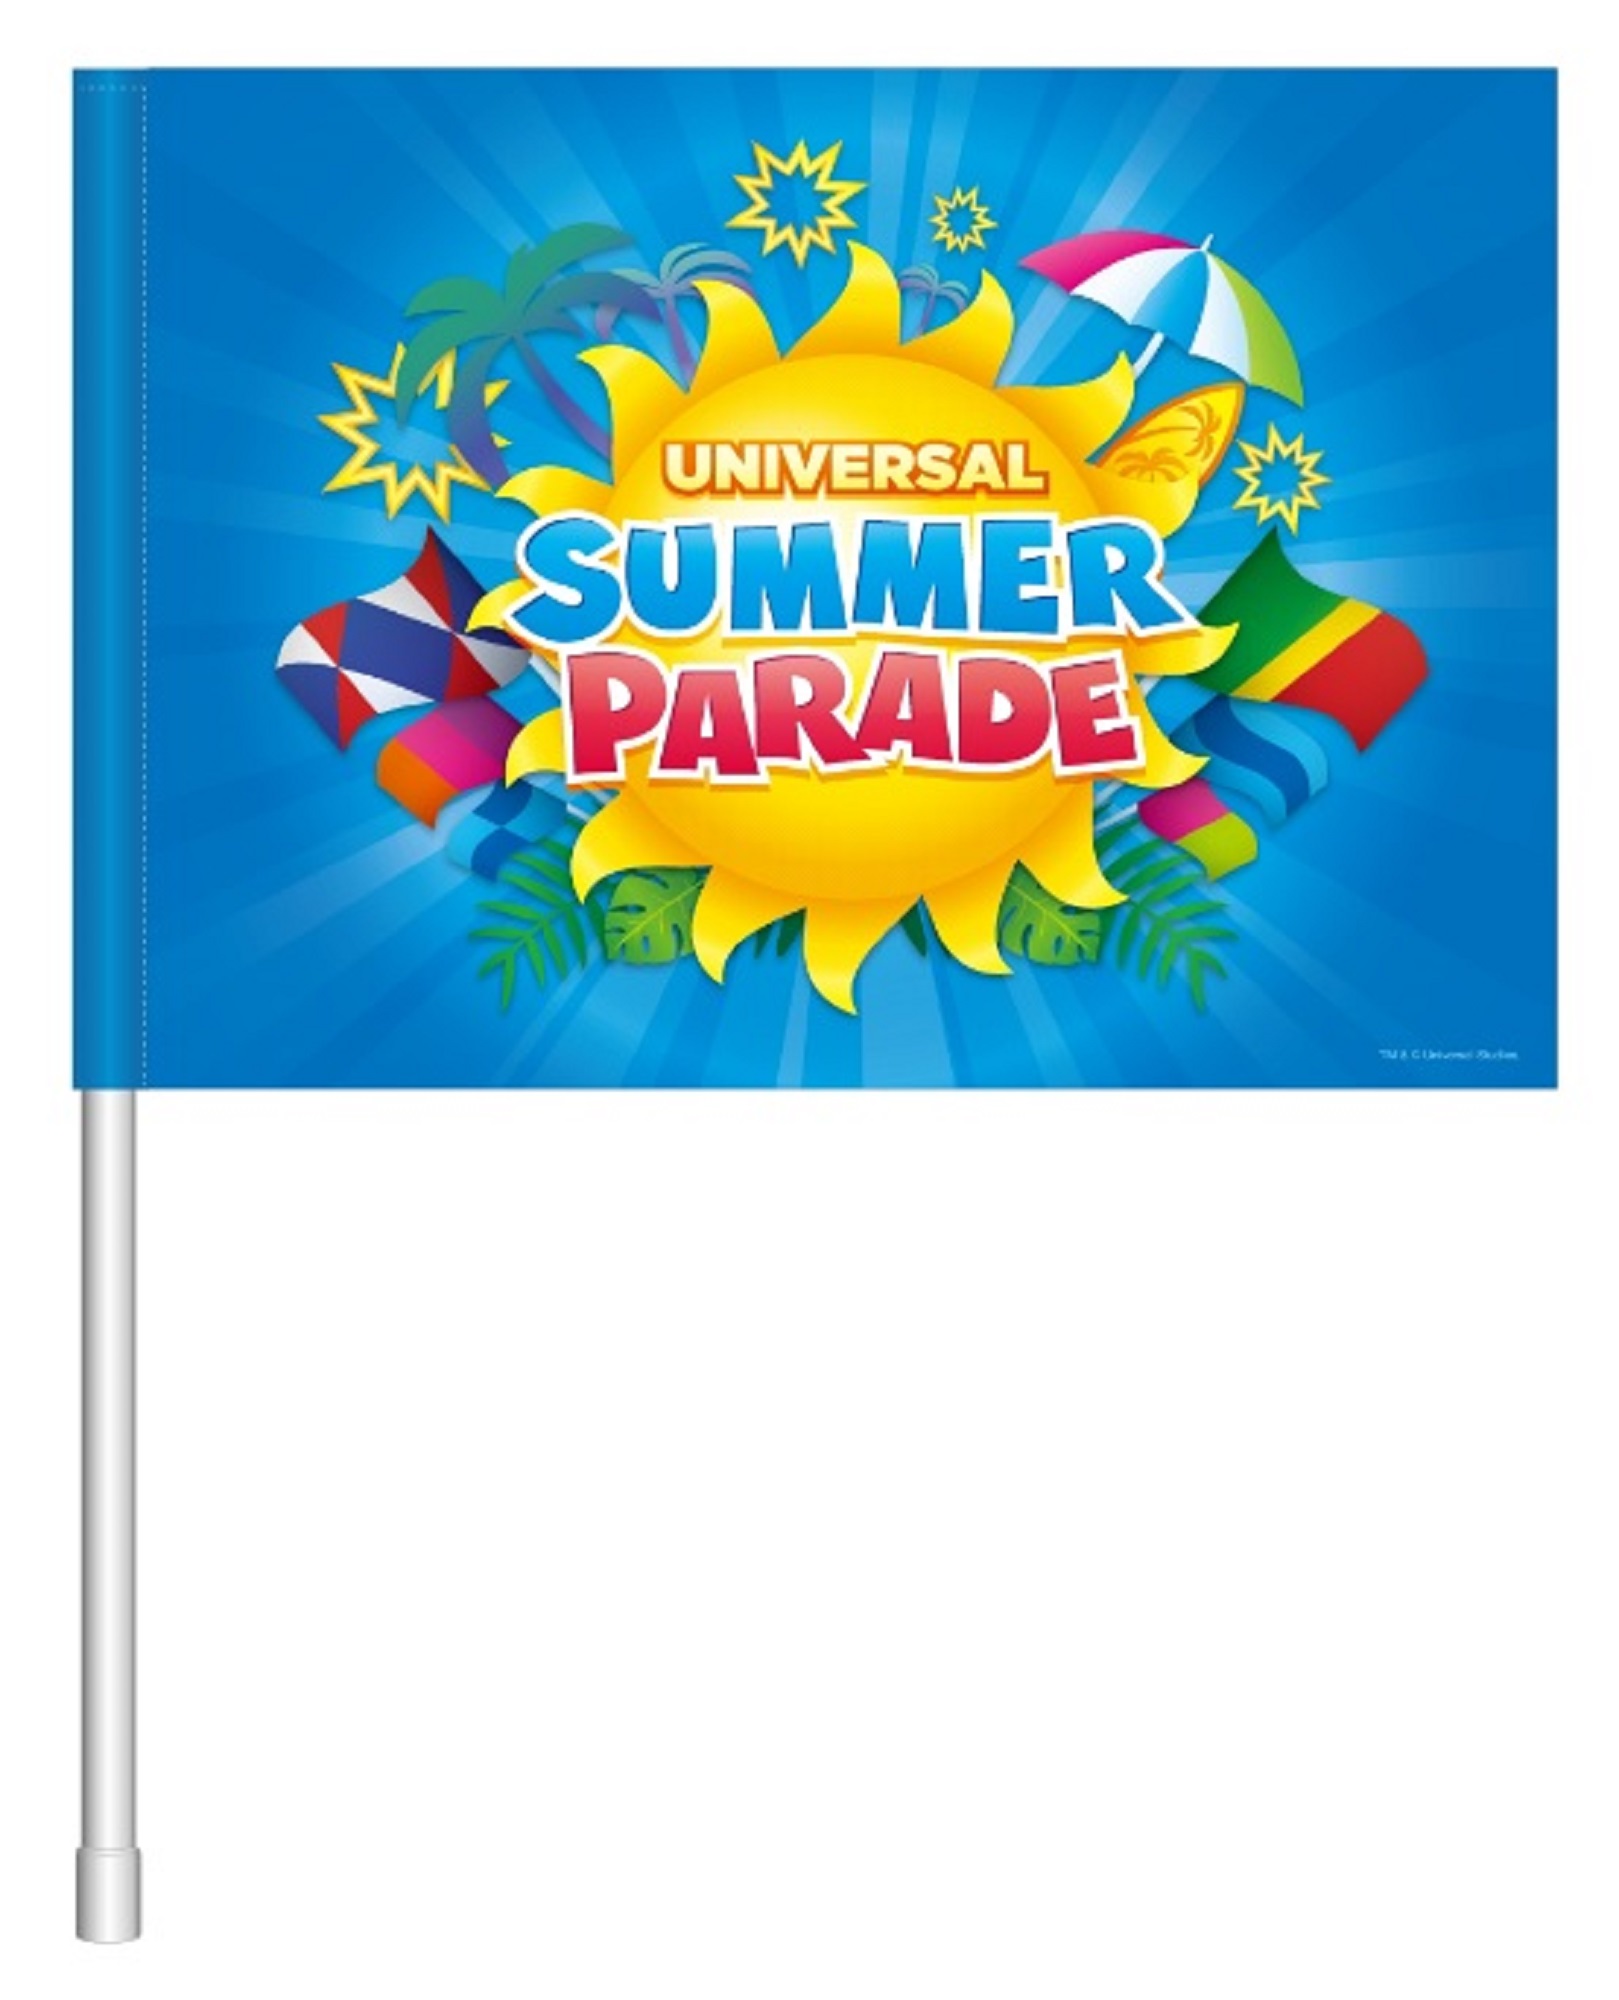 USJ Summer Parade USJ夏限定のパレード夏季有限遊行11